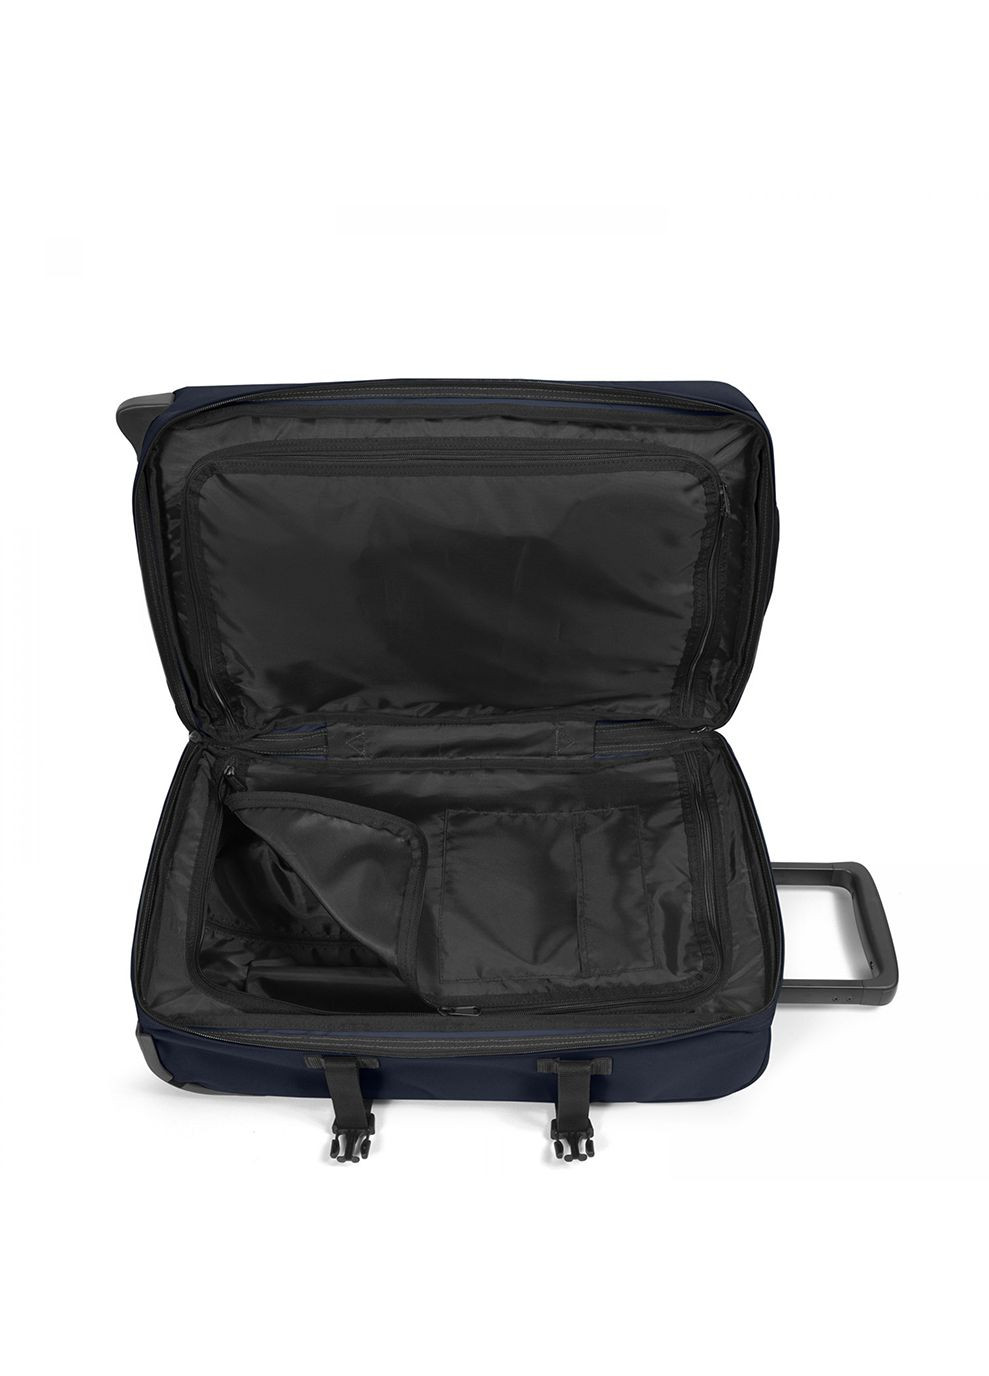 Малый чемодан TRANVERZ S Черный Eastpak (268469609)